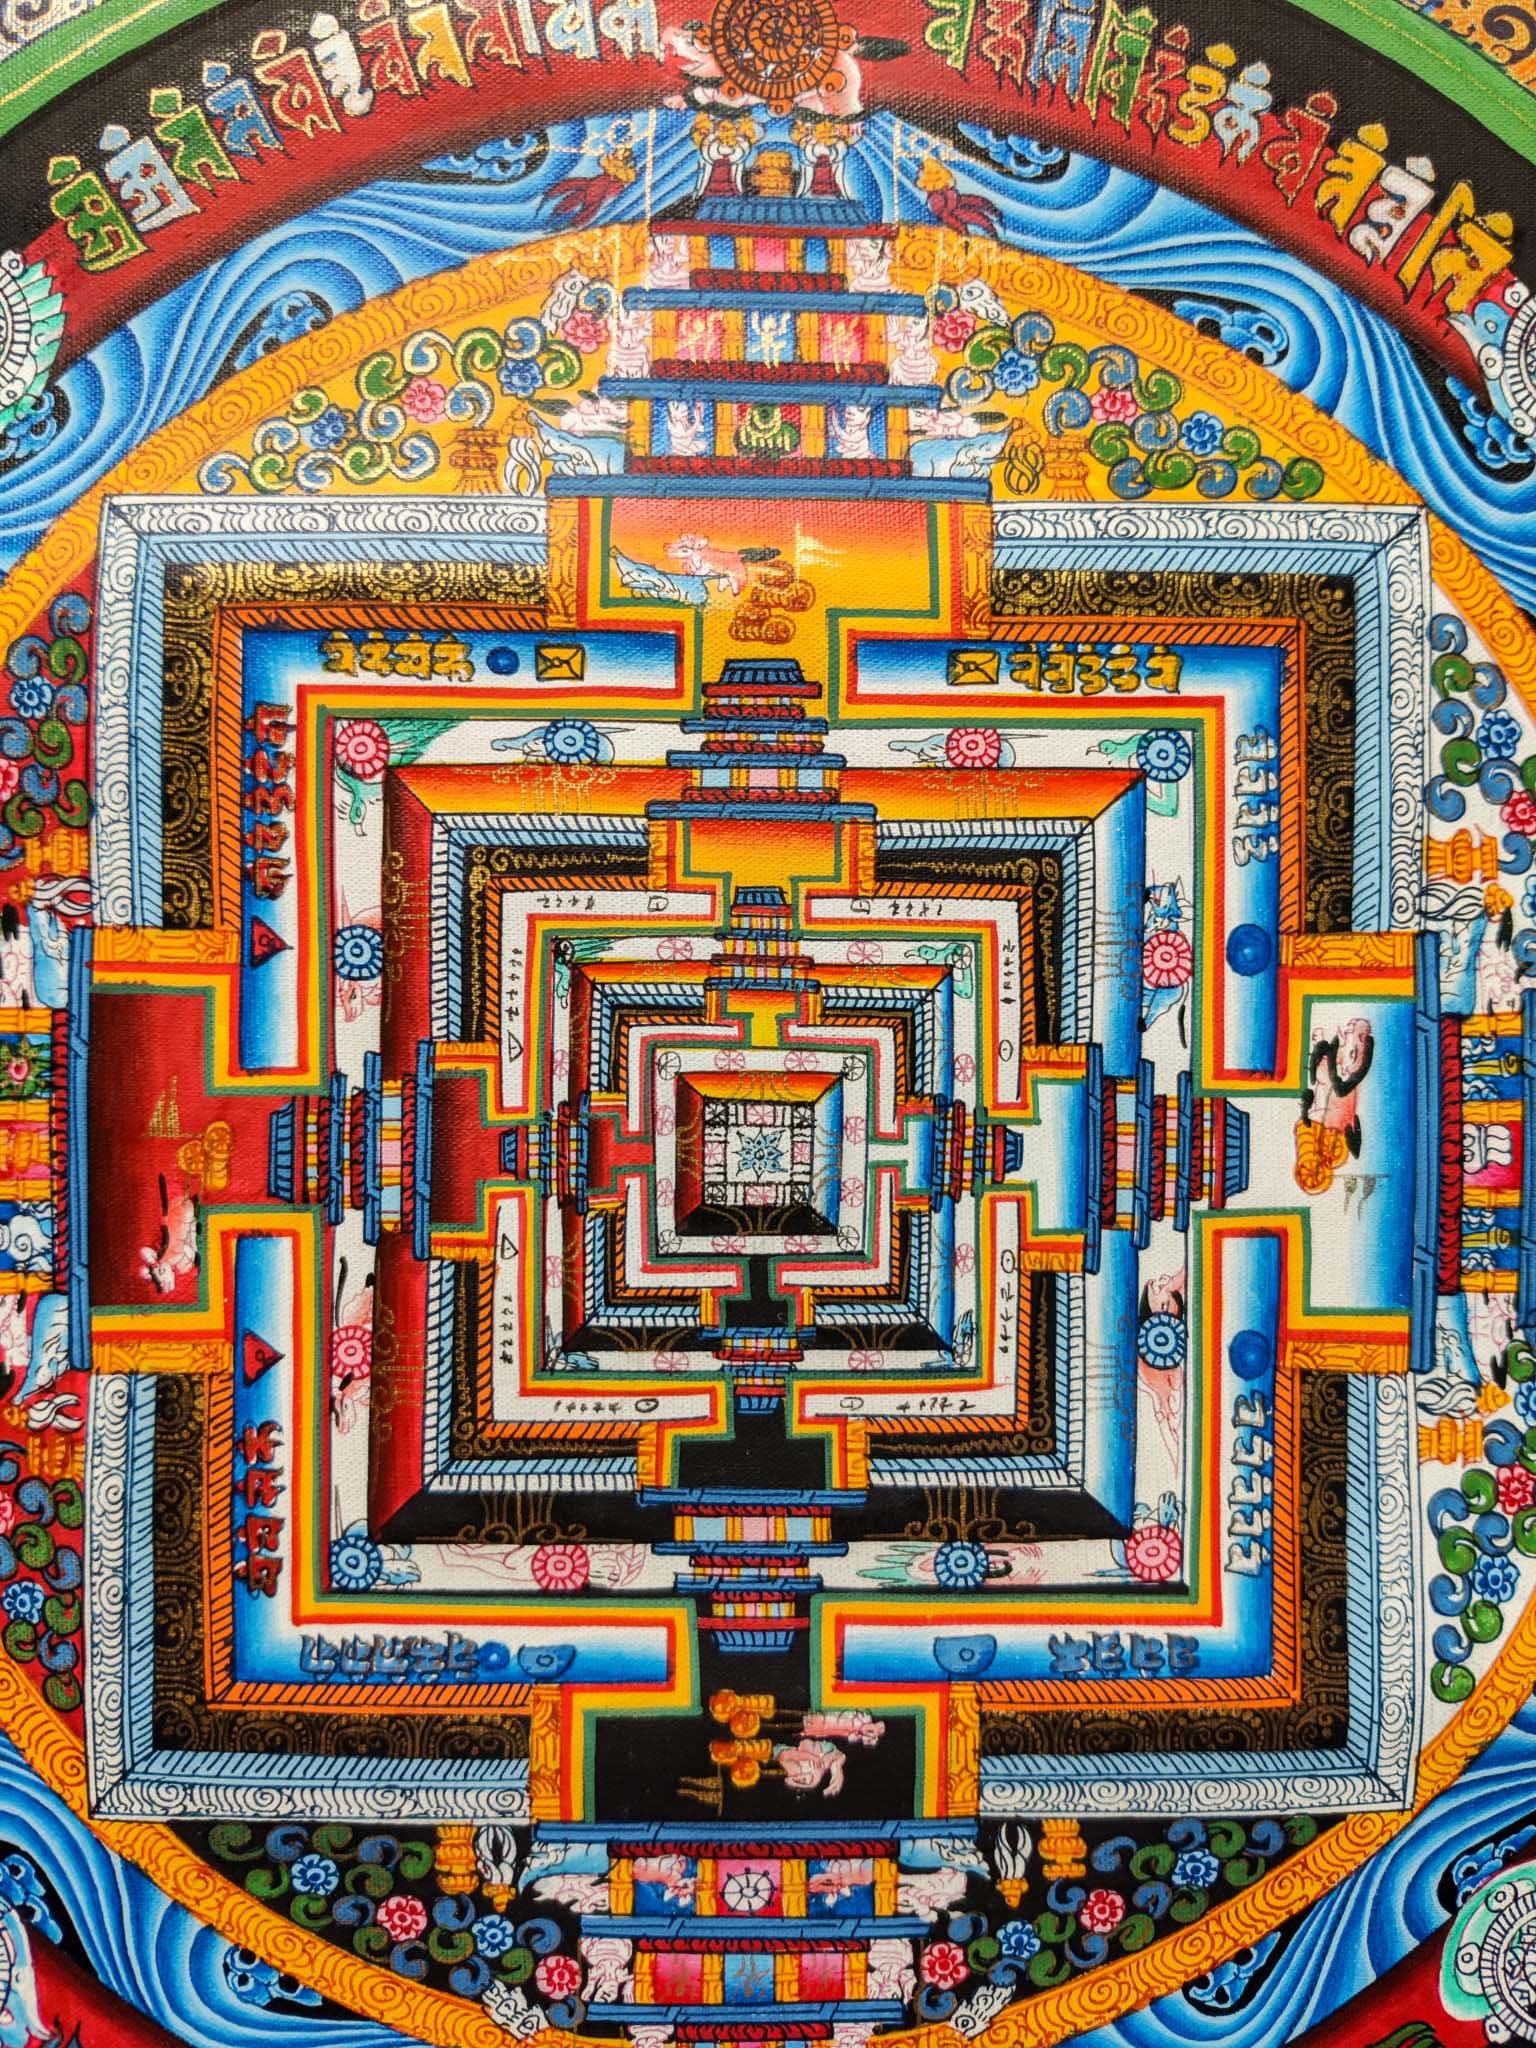 Dalai Lama Design of Kalachakra Mandala - Lucky Thanka